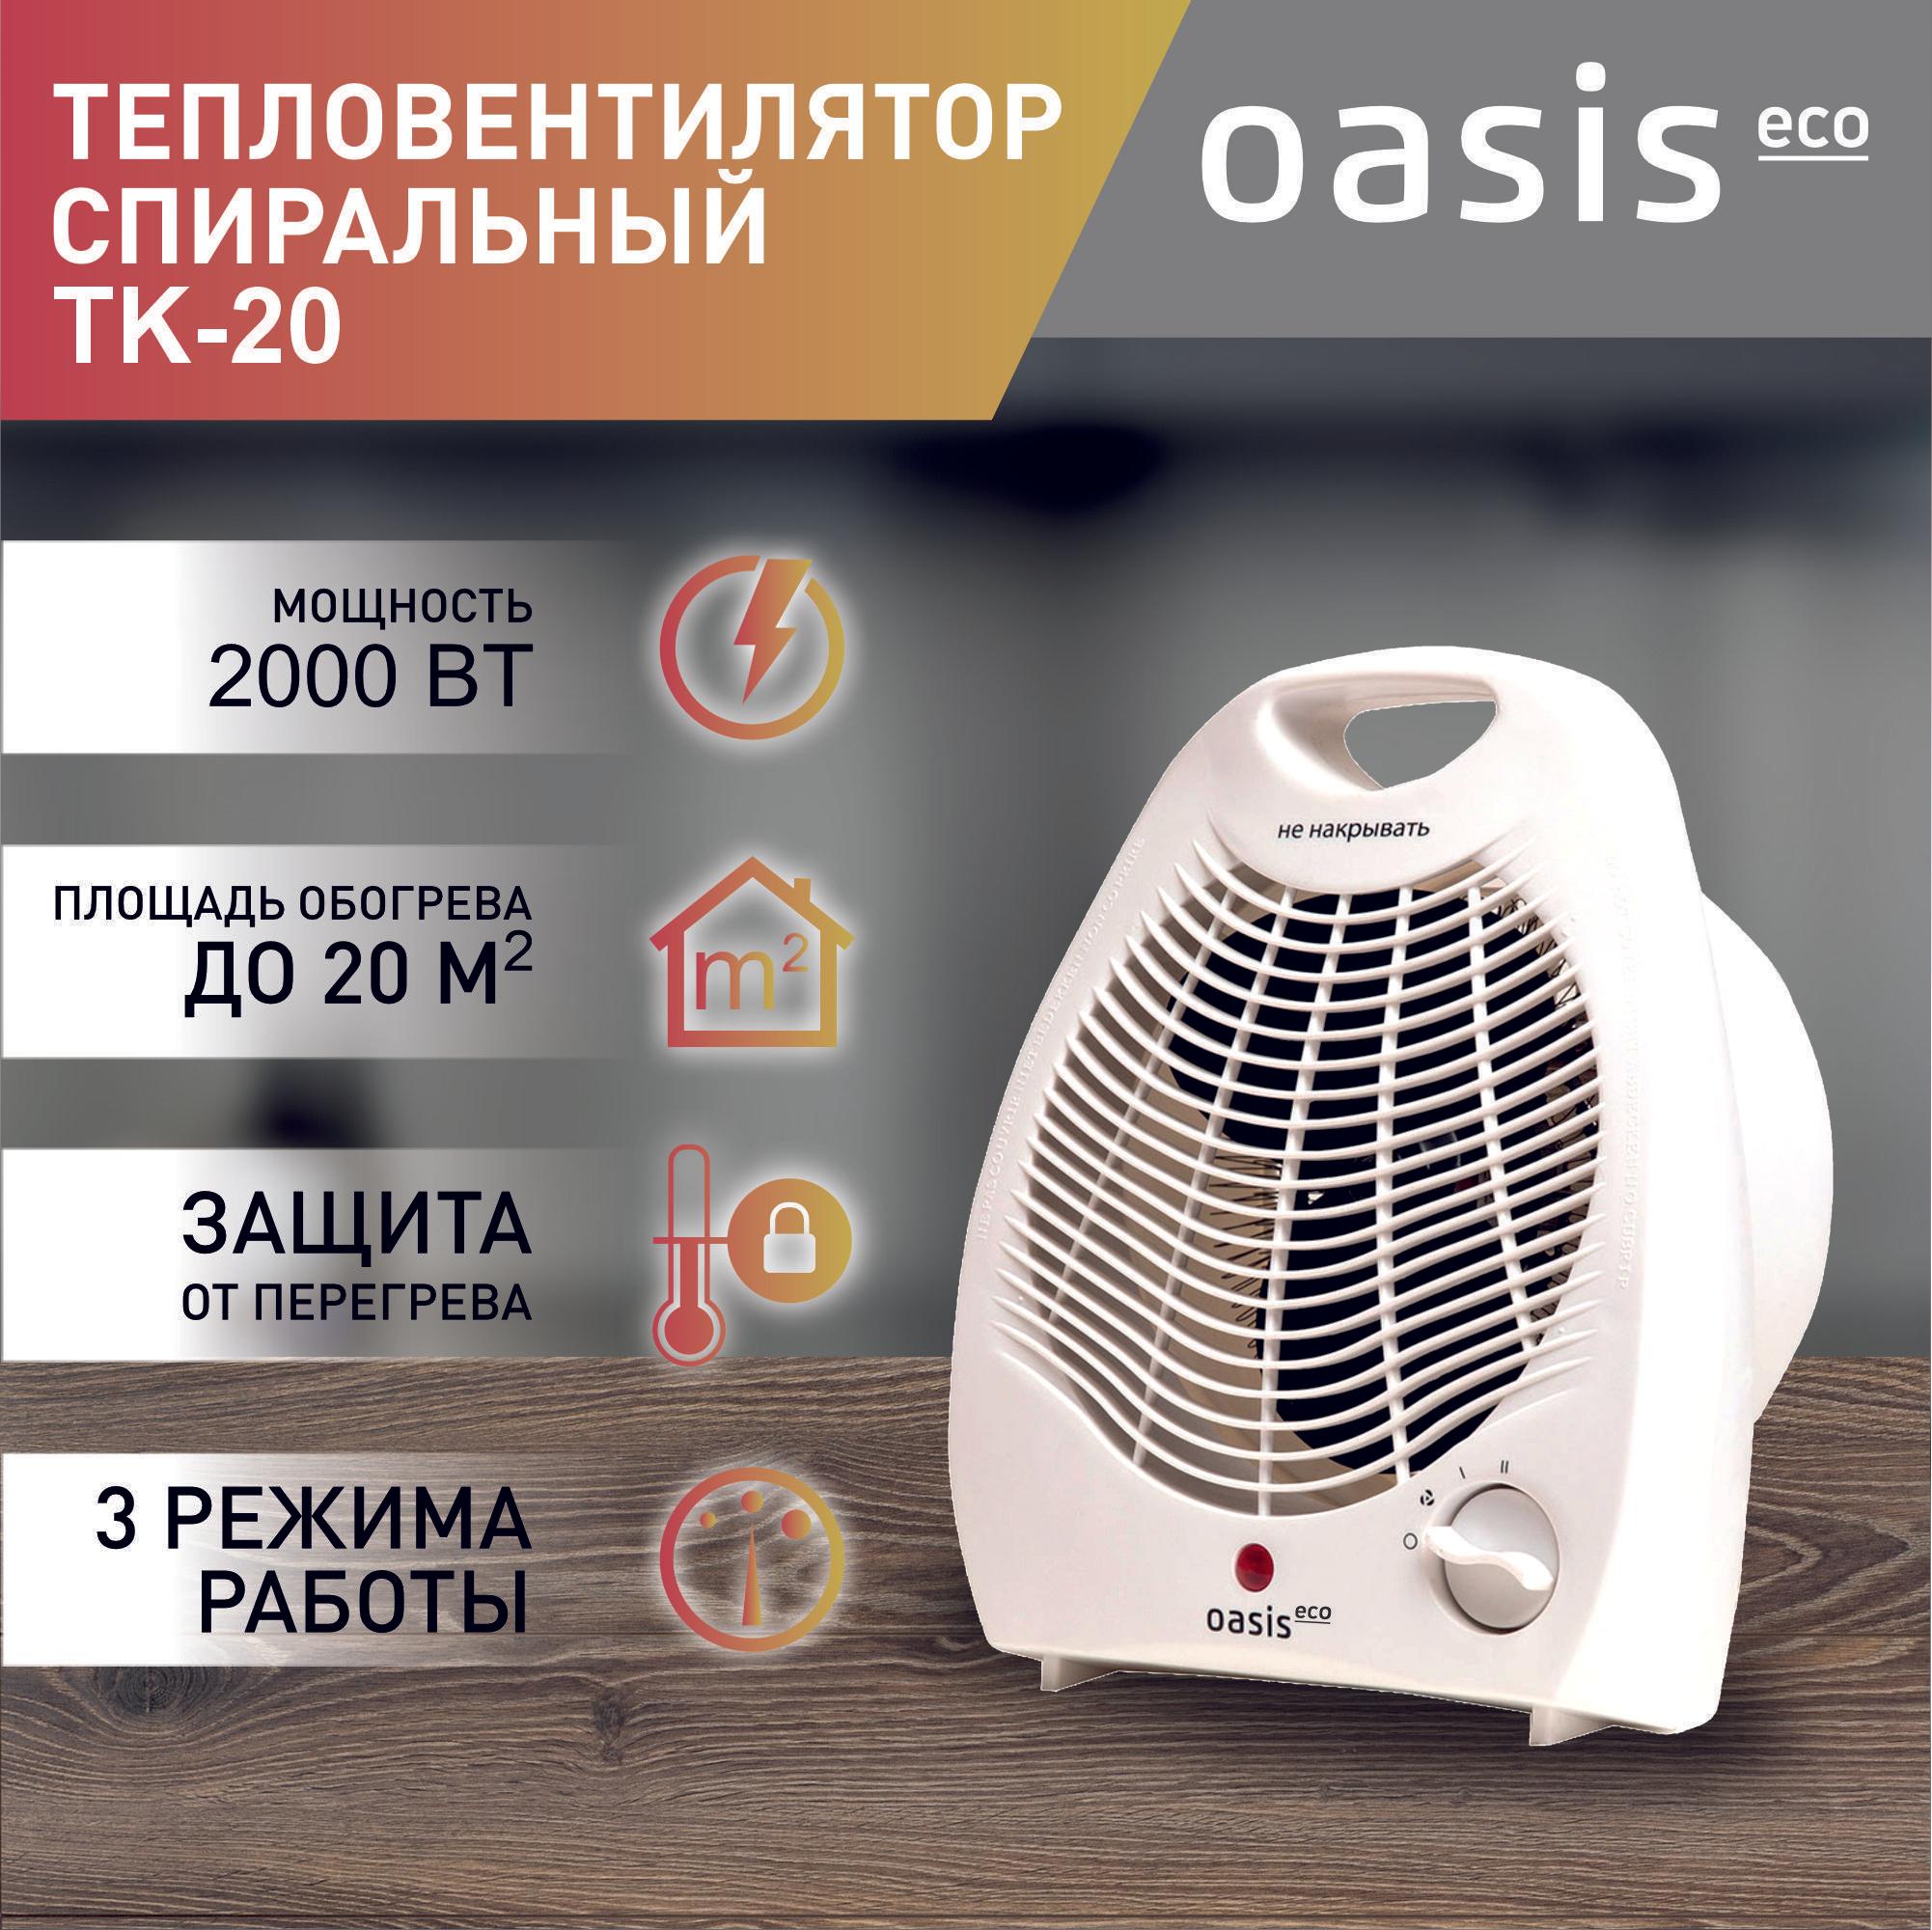 Тепловентилятор Oasis Eco, модель ТК-20, спиральный, 2000 Вт, до 20 кв. м, тепловентилятор напольный, настольный